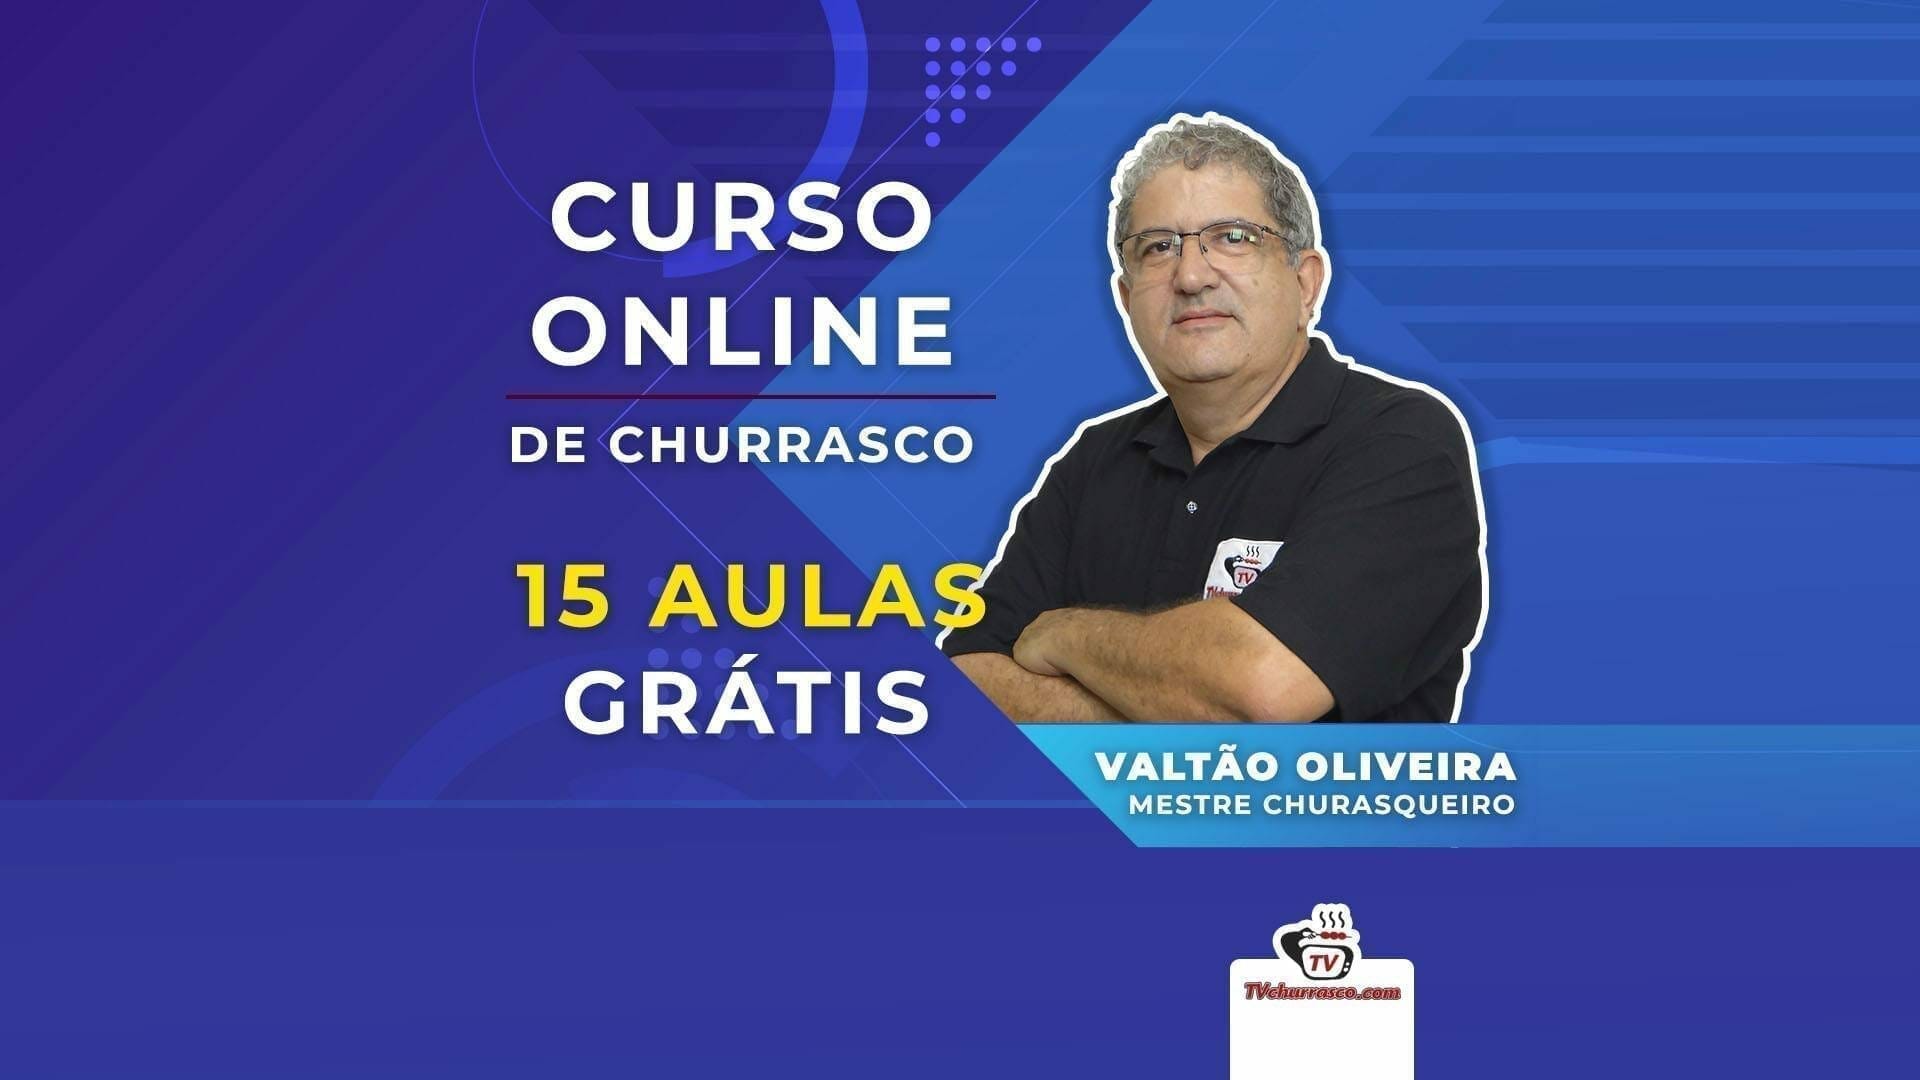 Curso ONLINE de Churrasco com 15 Aulas GRÁTIS - Tv Churrasco